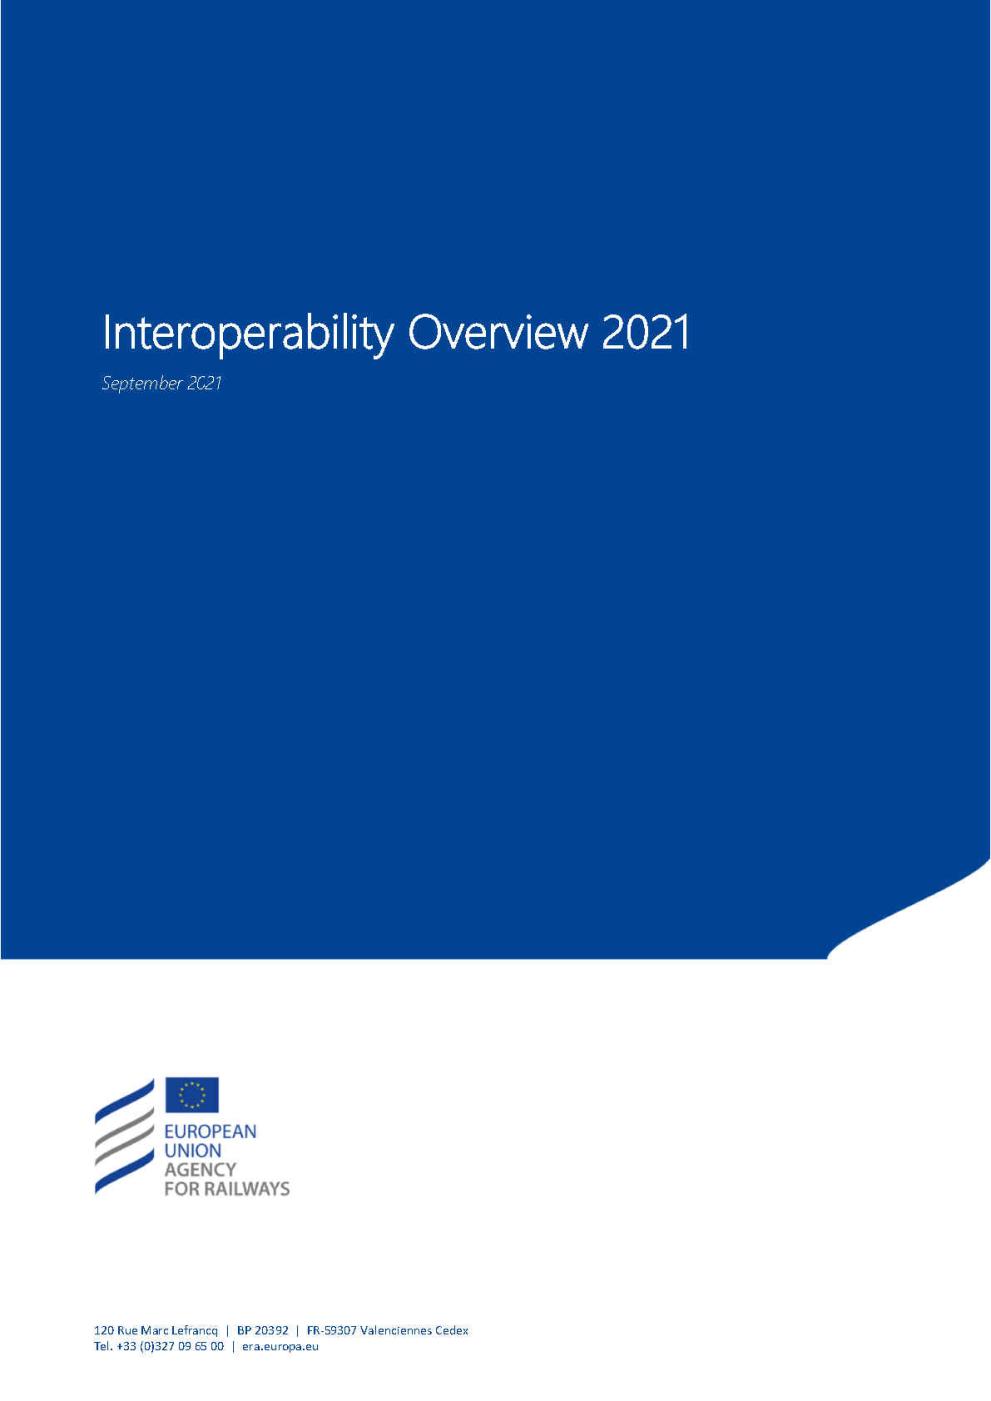 ERA’s 2021 Annual Interoperability Overview